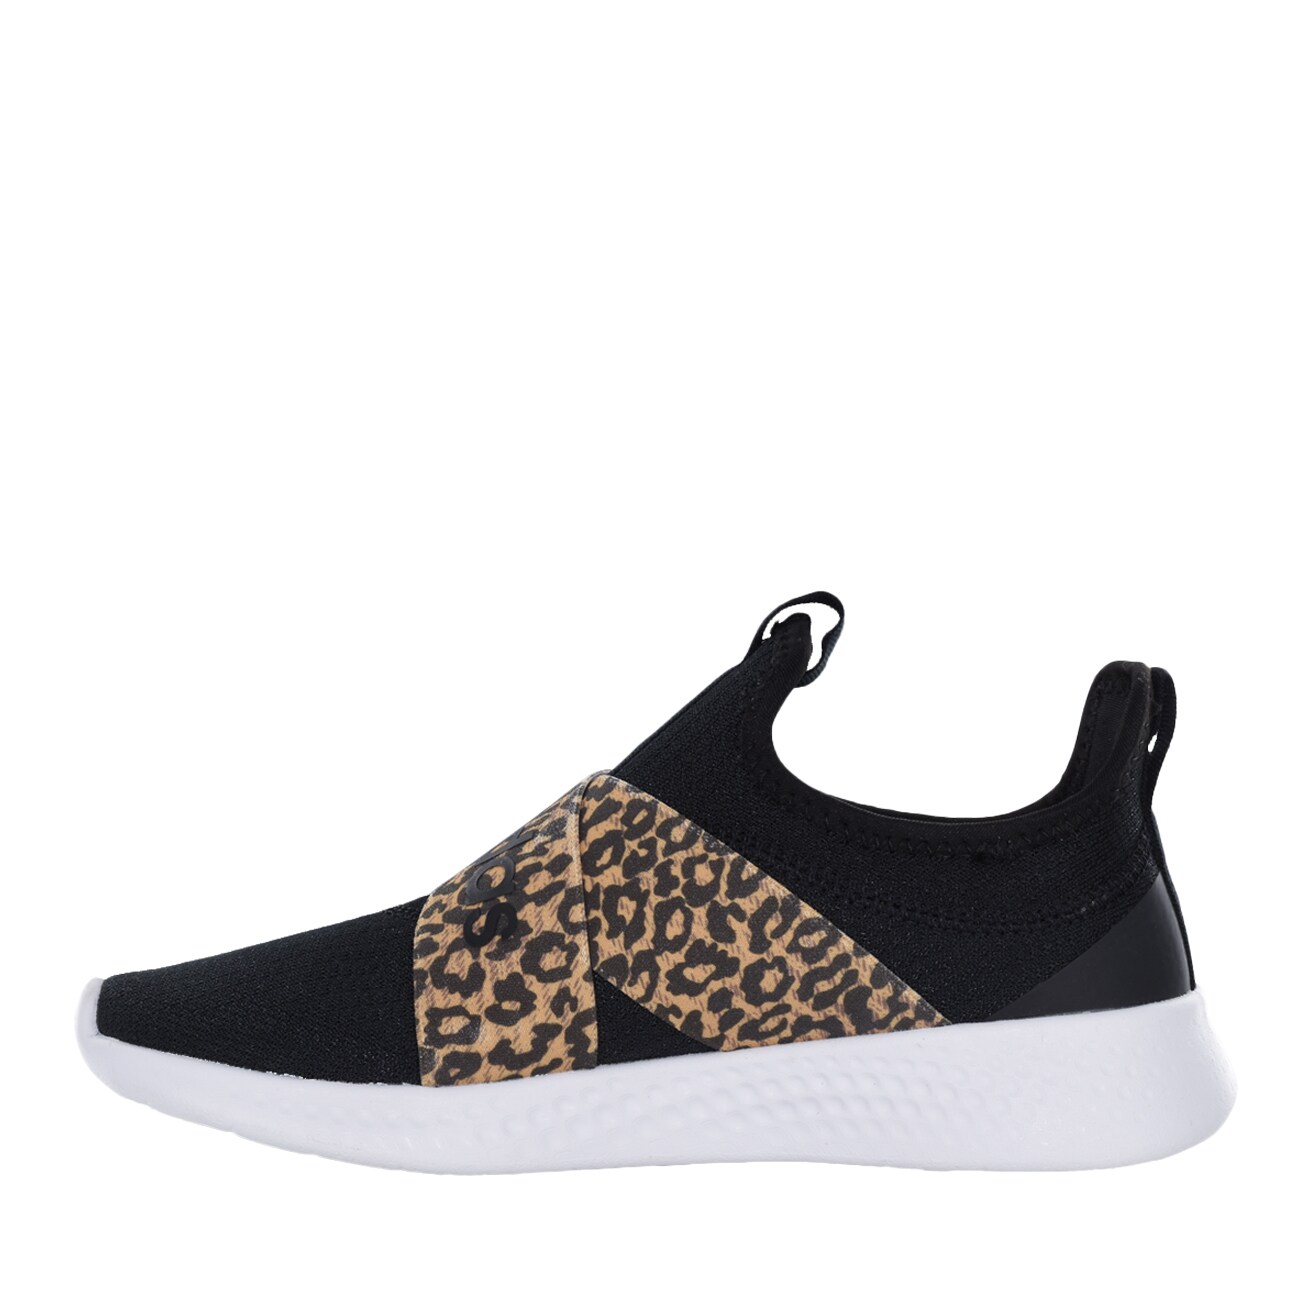 adidas puremotion leopard shoes